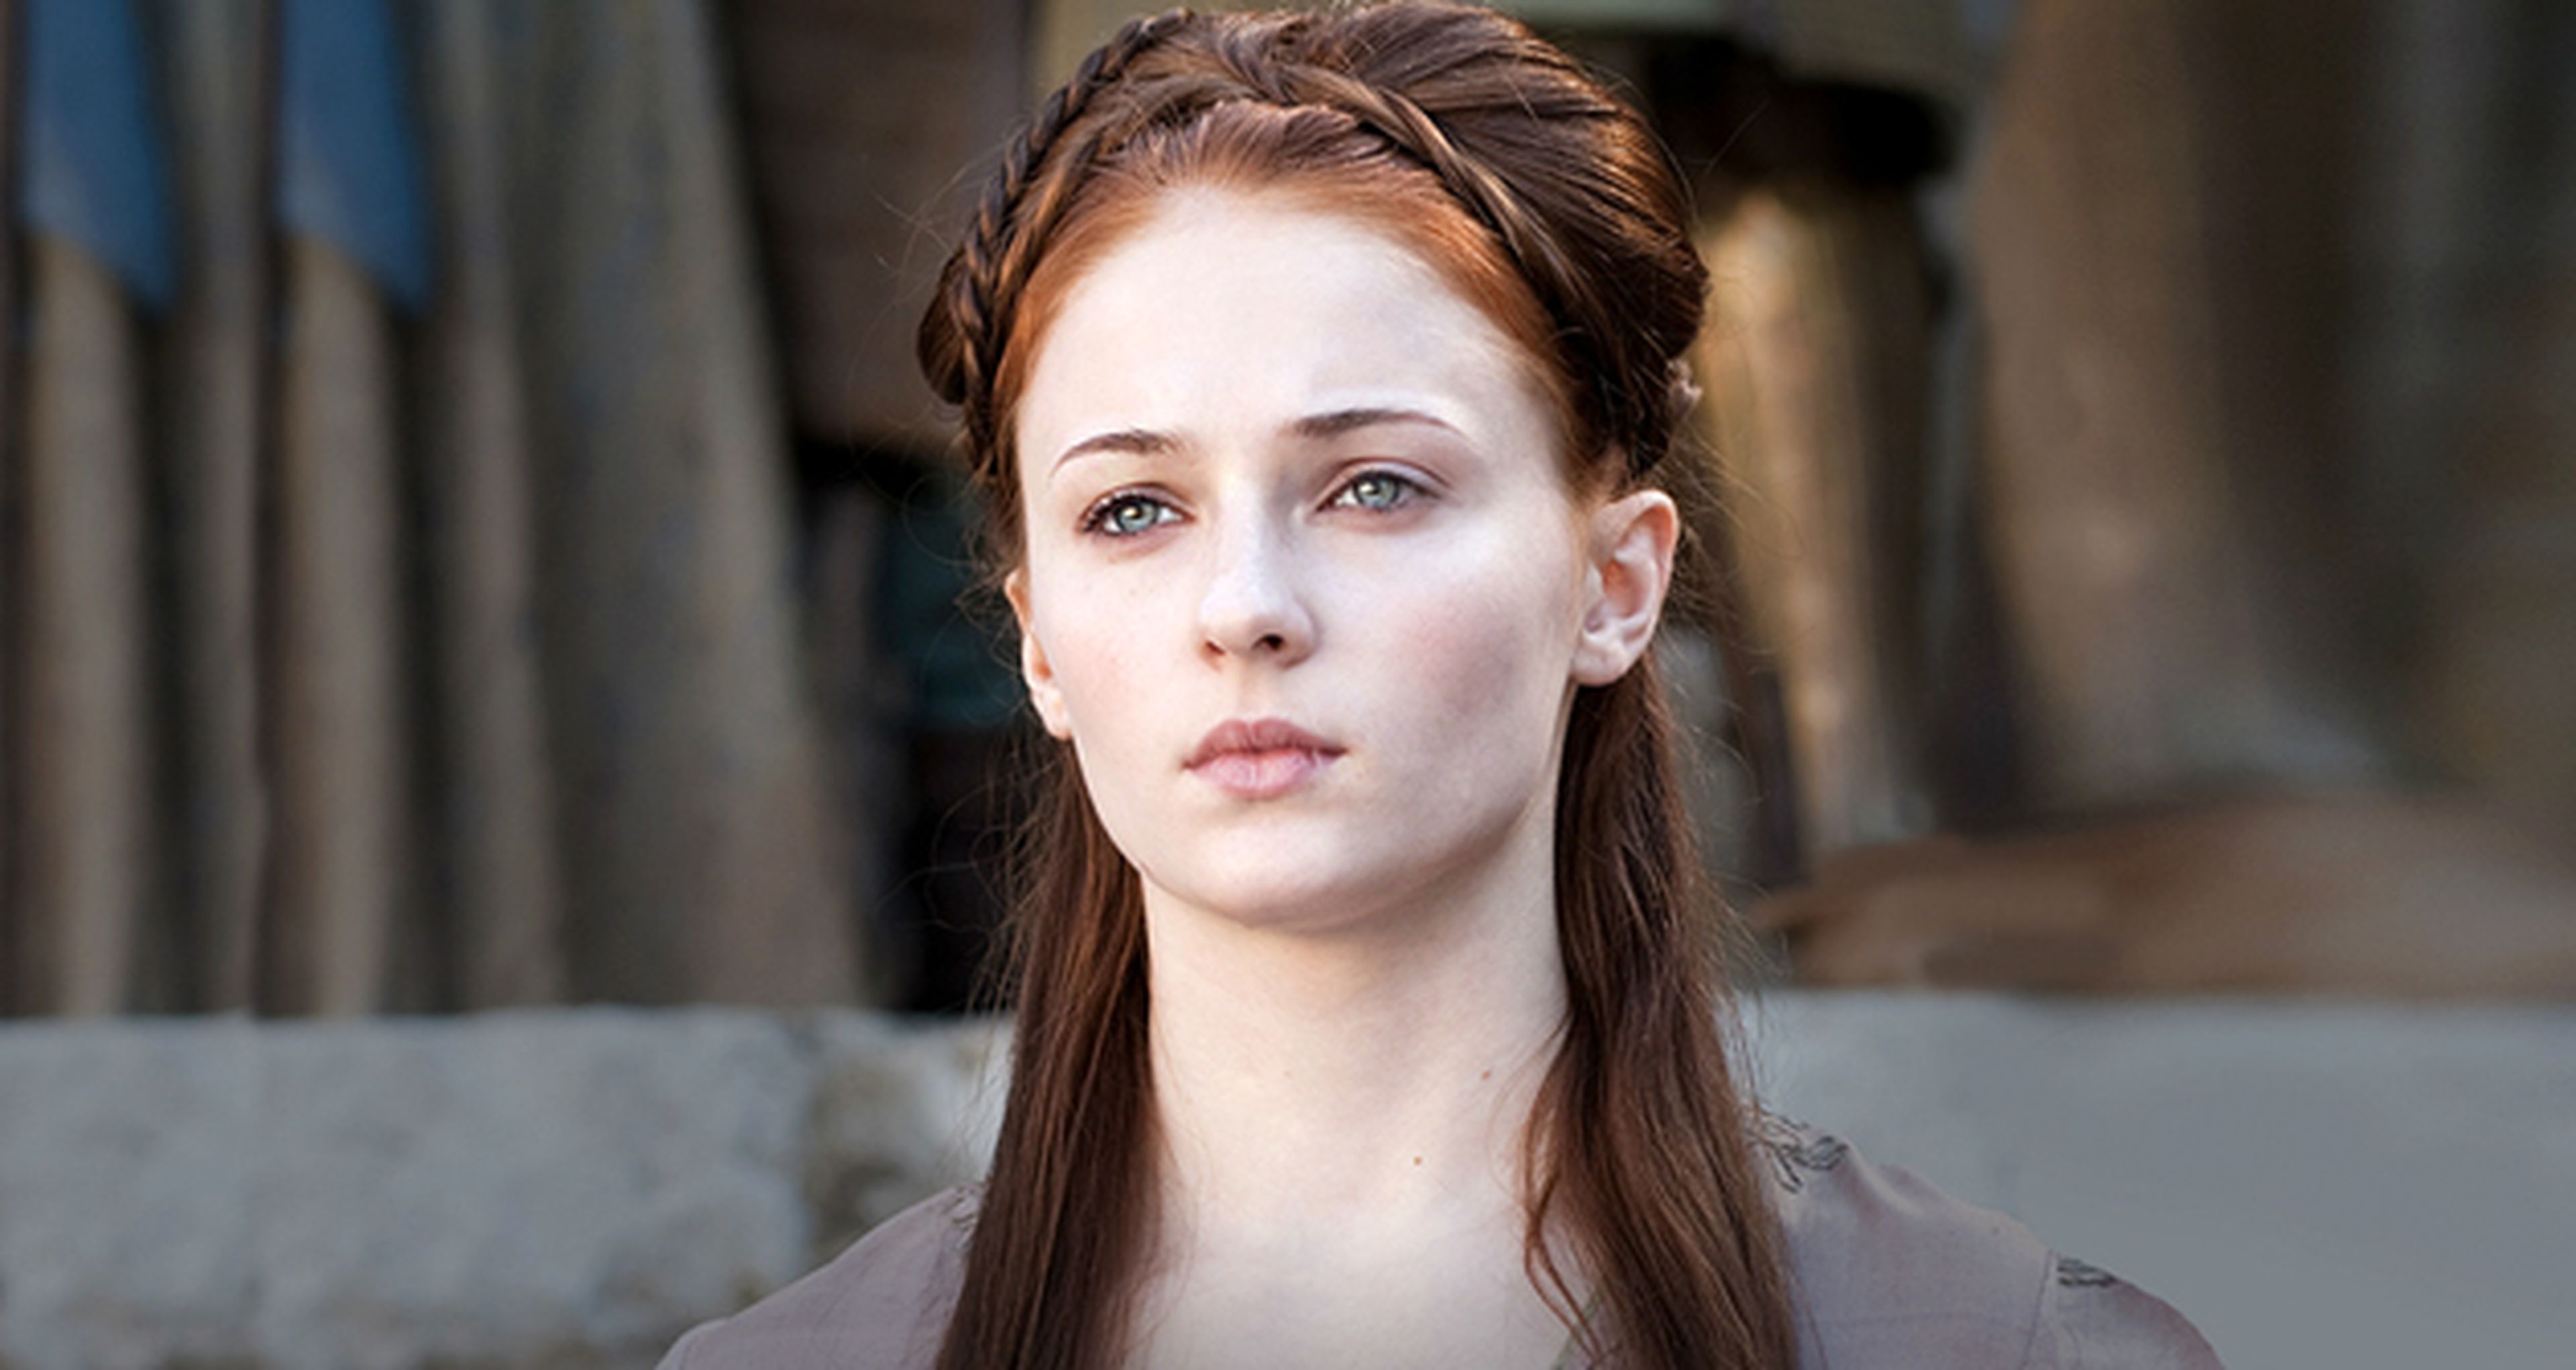 El final de Juego de tronos 4, espectacular según Sophie Turner (Sansa)